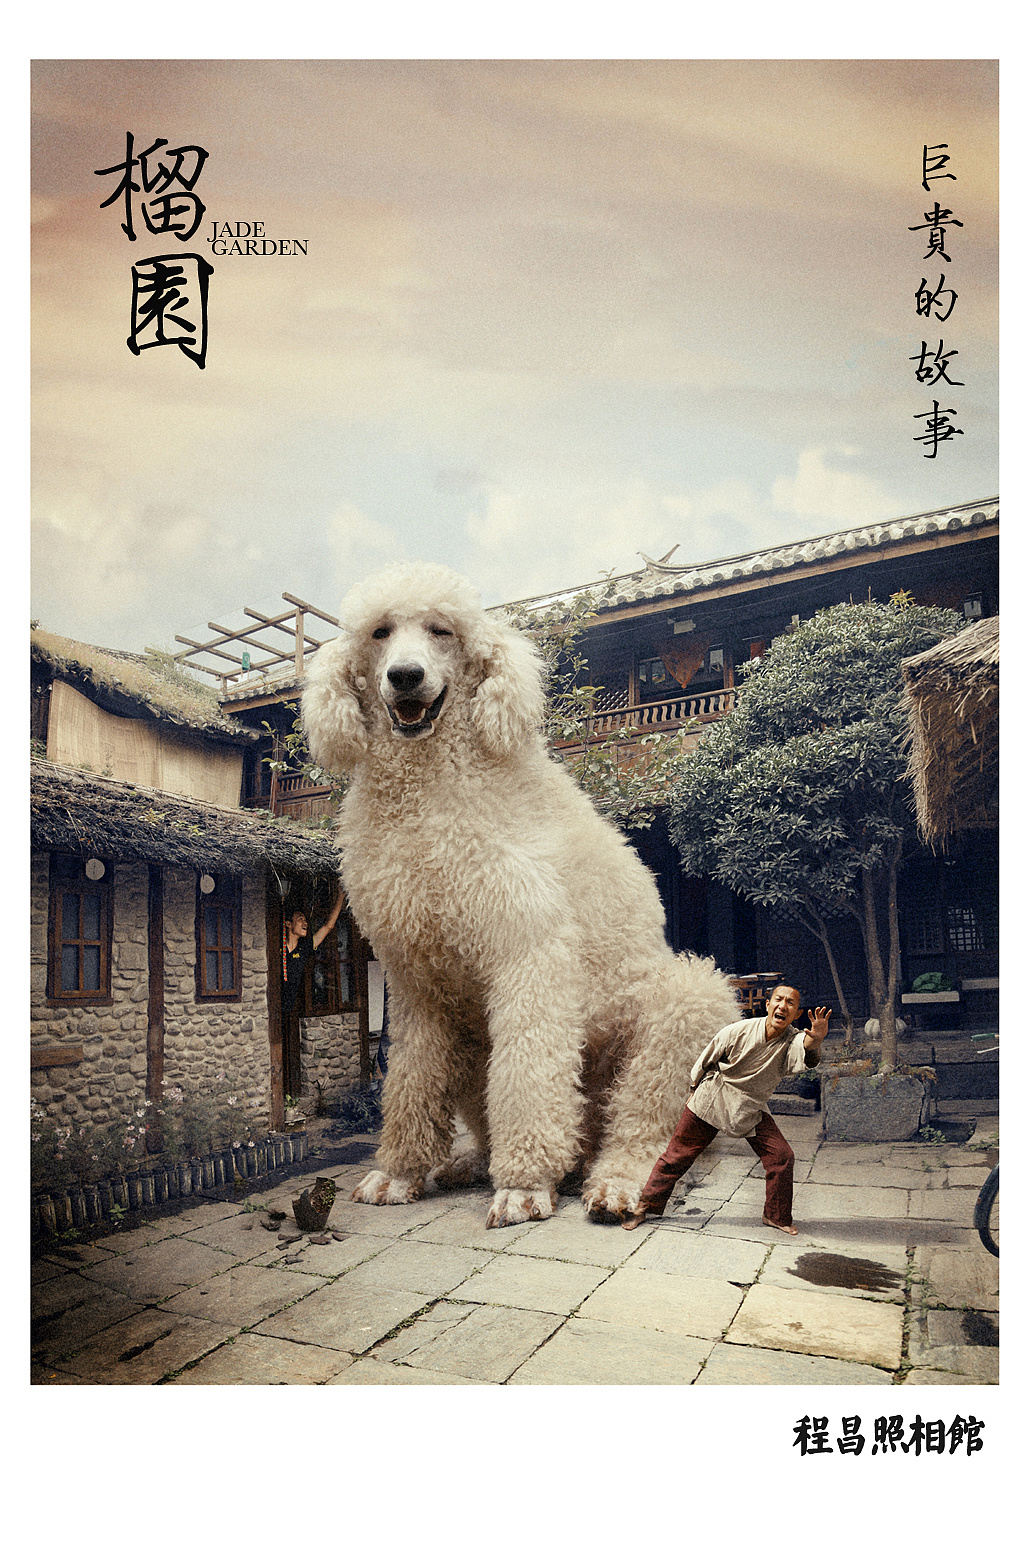 出售自家养红白花巨贵。 - 宠物犬交易 - 猛犬俱乐部-中国具有影响力的猛犬网站 - Powered by Discuz!